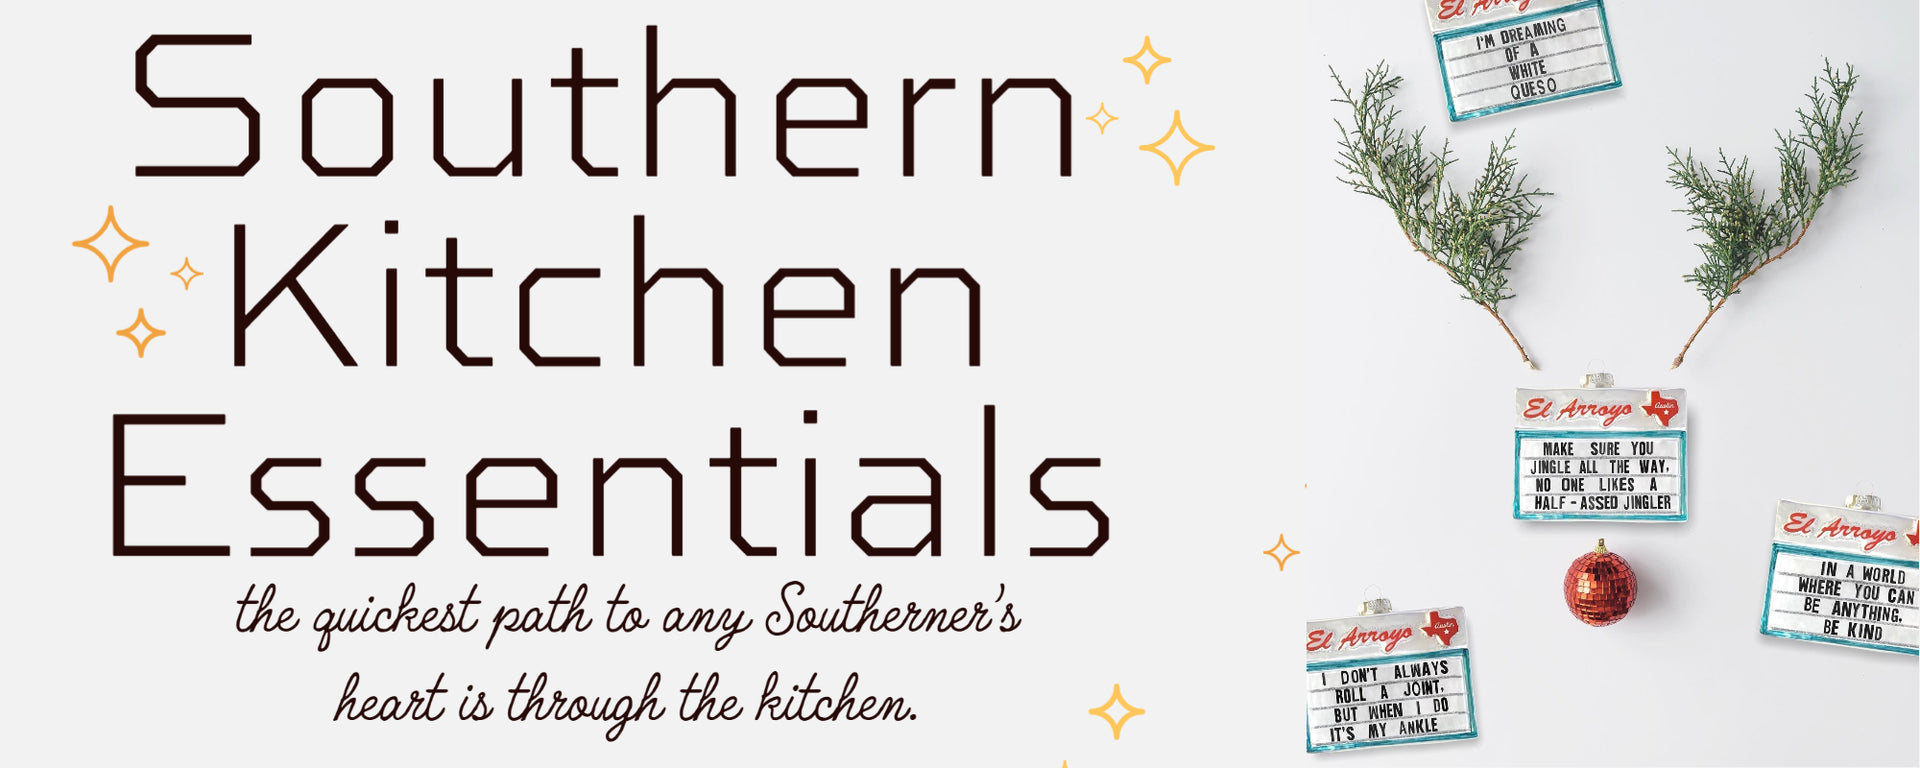 Southern Kitchen Essentials